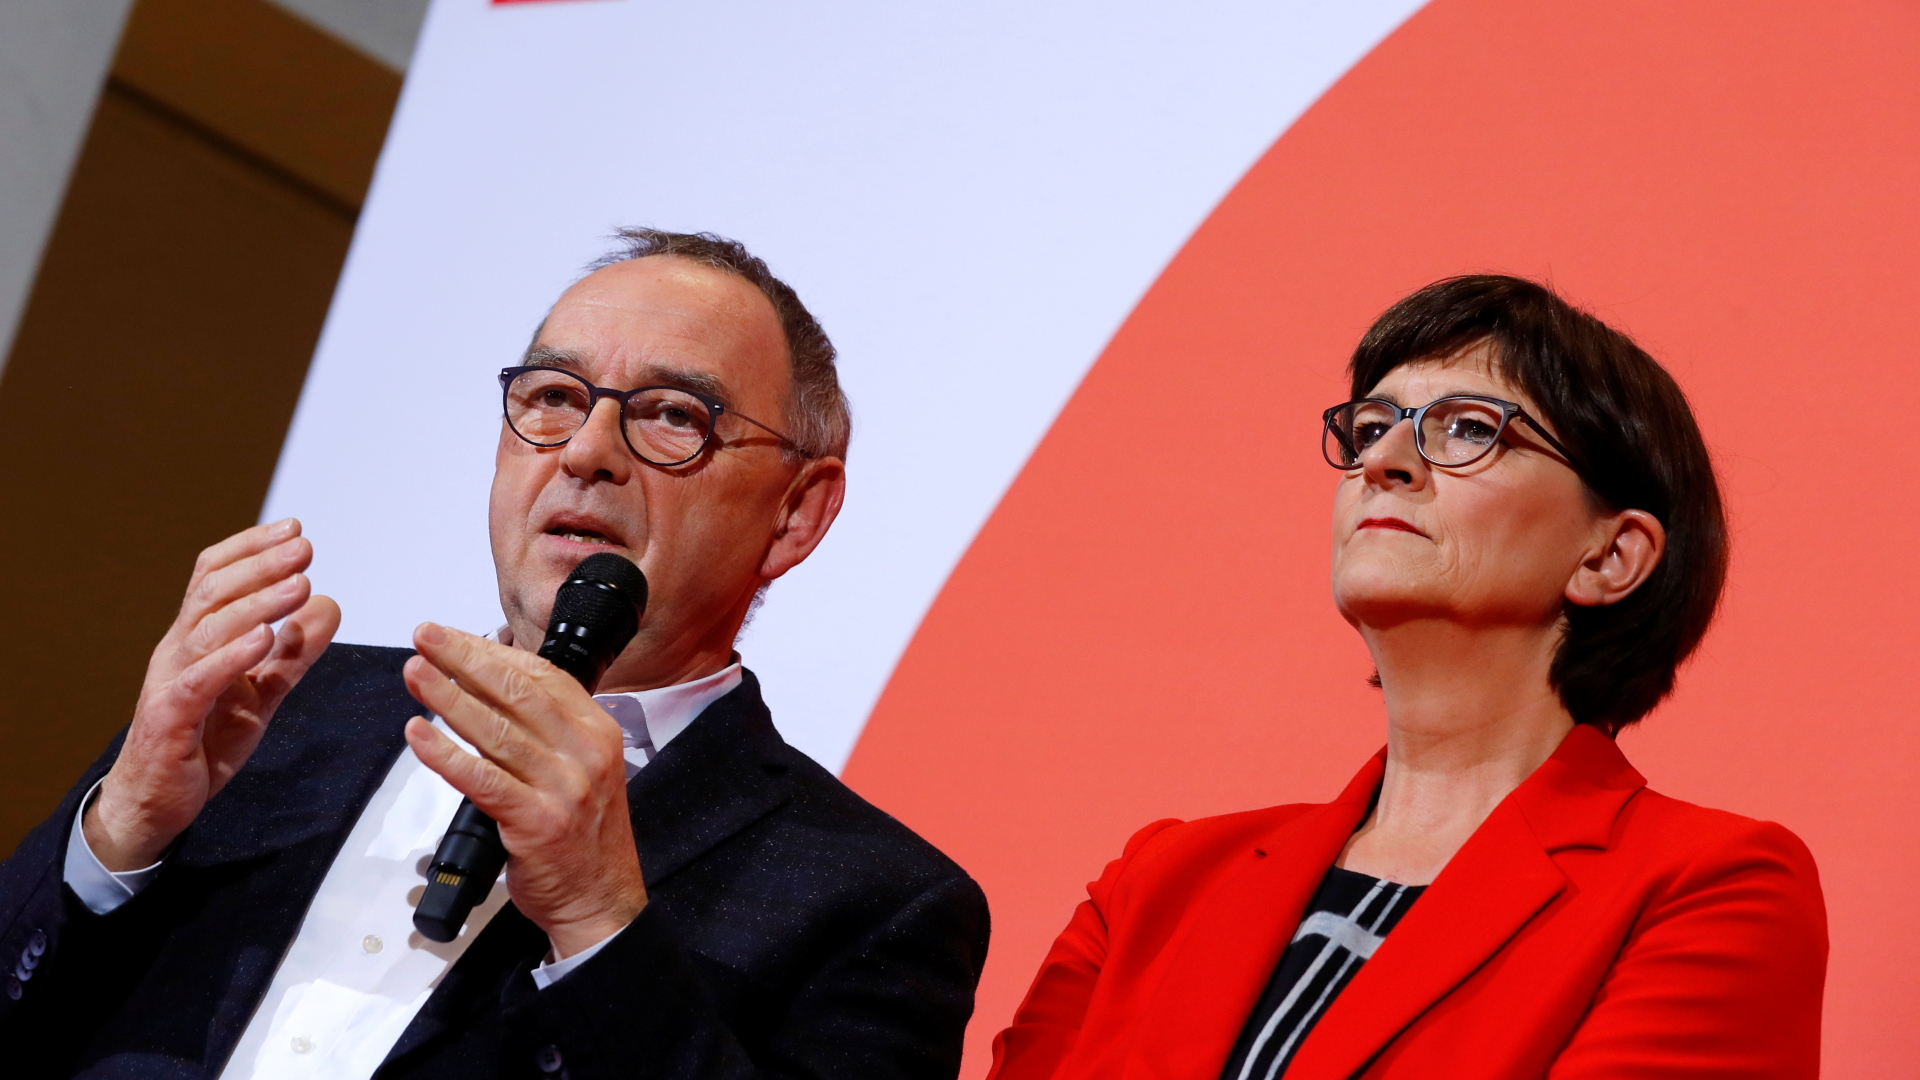 Saskia Esken und Norbert Walter-Borjans | Bildquelle: REUTERS